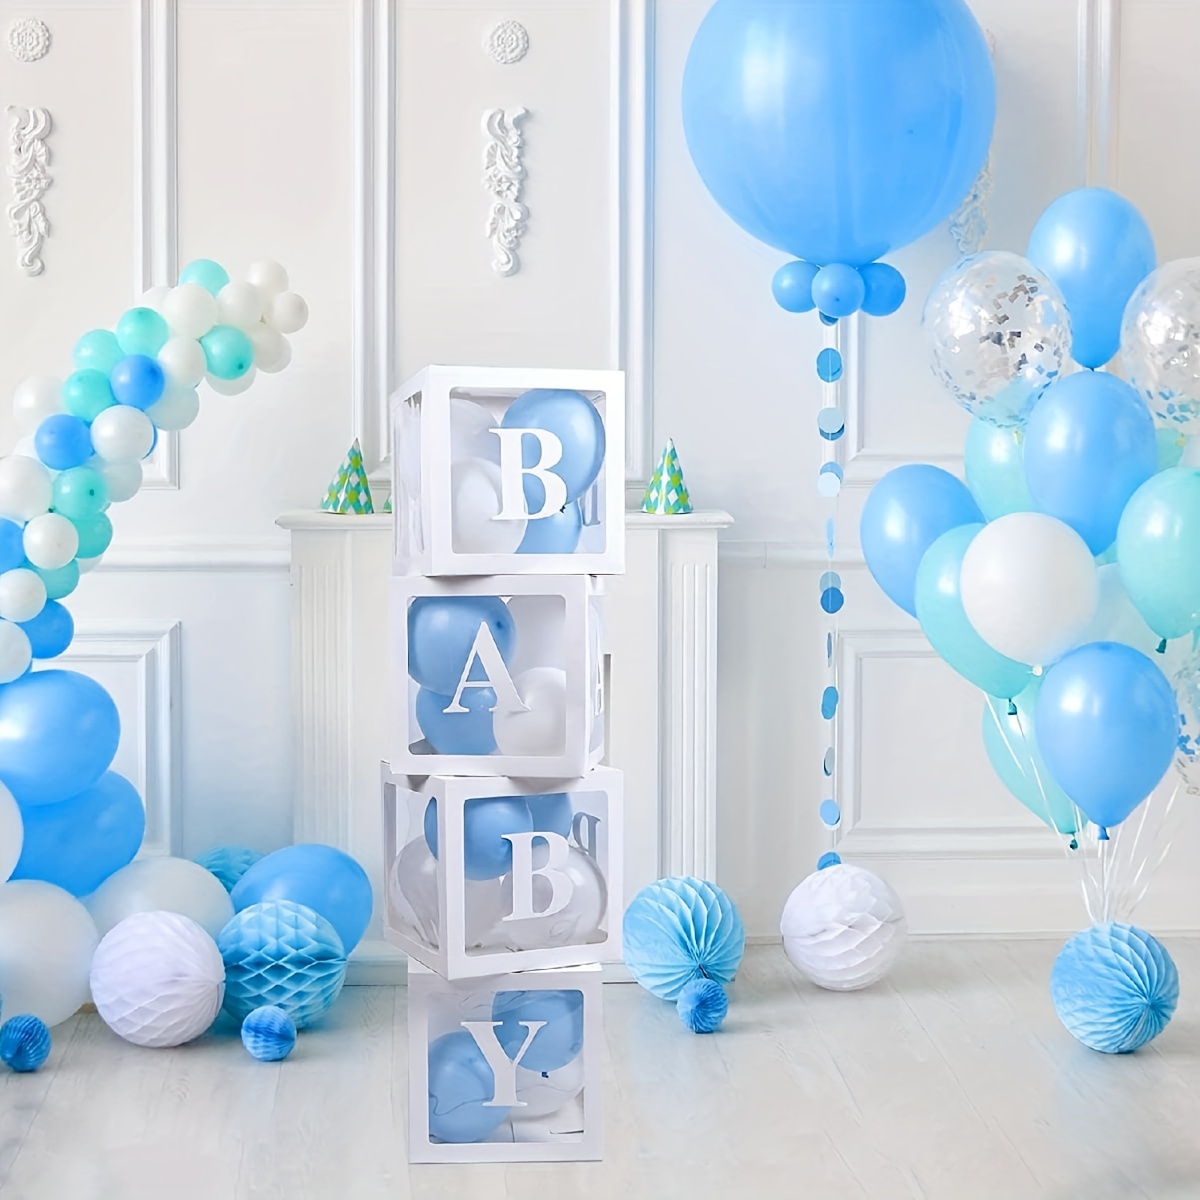  Decoraciones para fiesta de primer cumpleaños para niña, letras  individuales con tres cajas cuadradas transparentes blancas con 24 globos  decorativos para fiestas de cumpleaños de bebé de 1 año : Juguetes